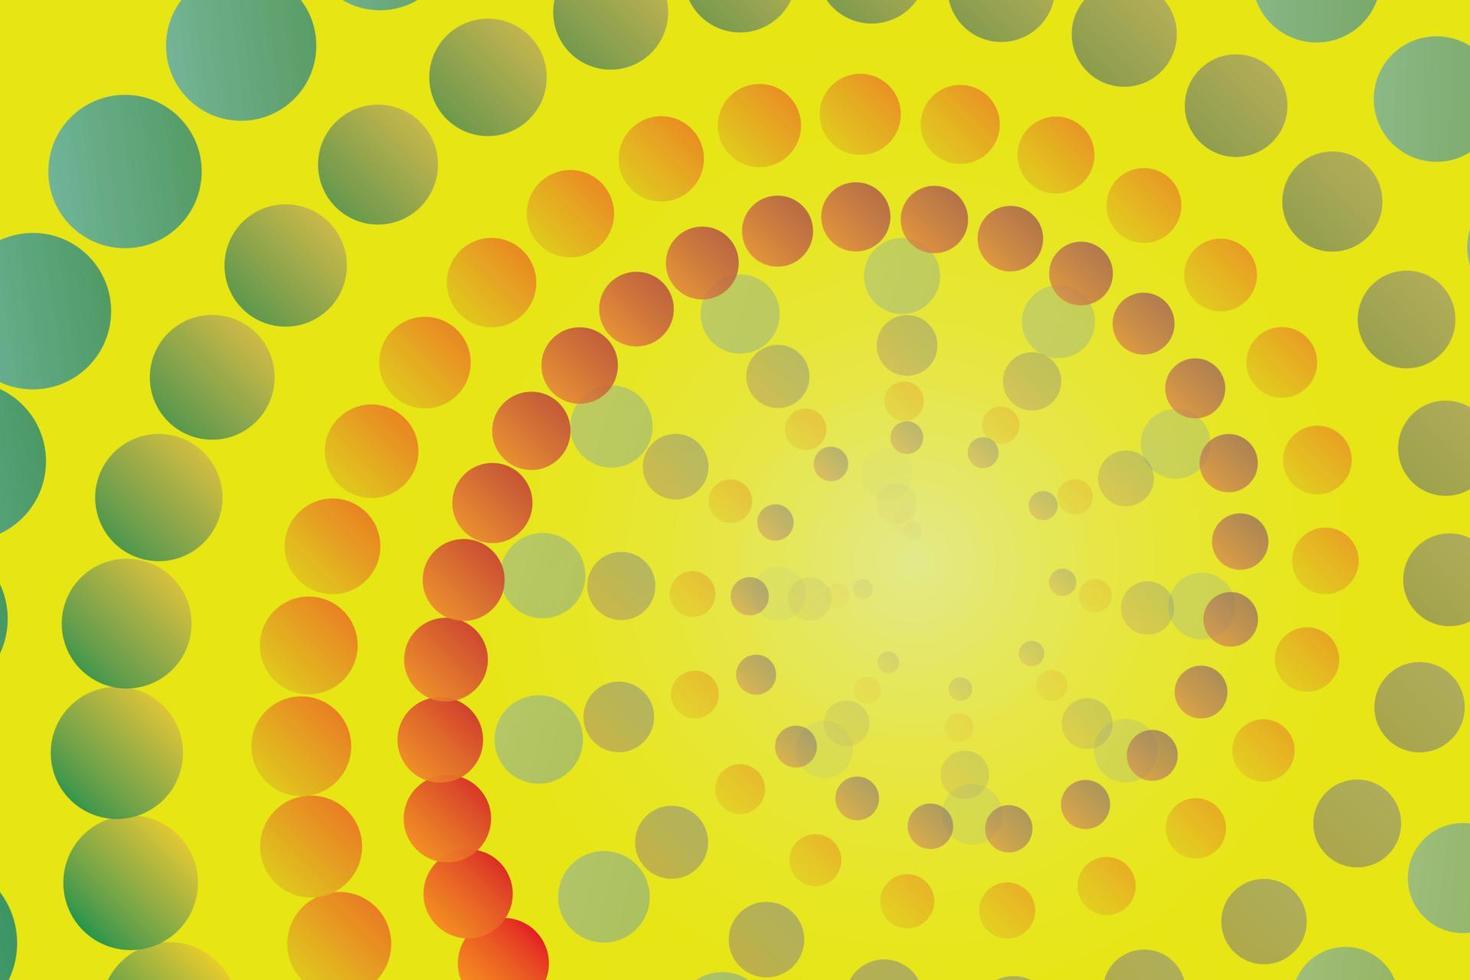 abstracte cirkel als achtergrond die klein, groot is en een verscheidenheid aan kleuren heeft. spiraal vanuit het midden van de afbeelding met een gele achtergrond. vector